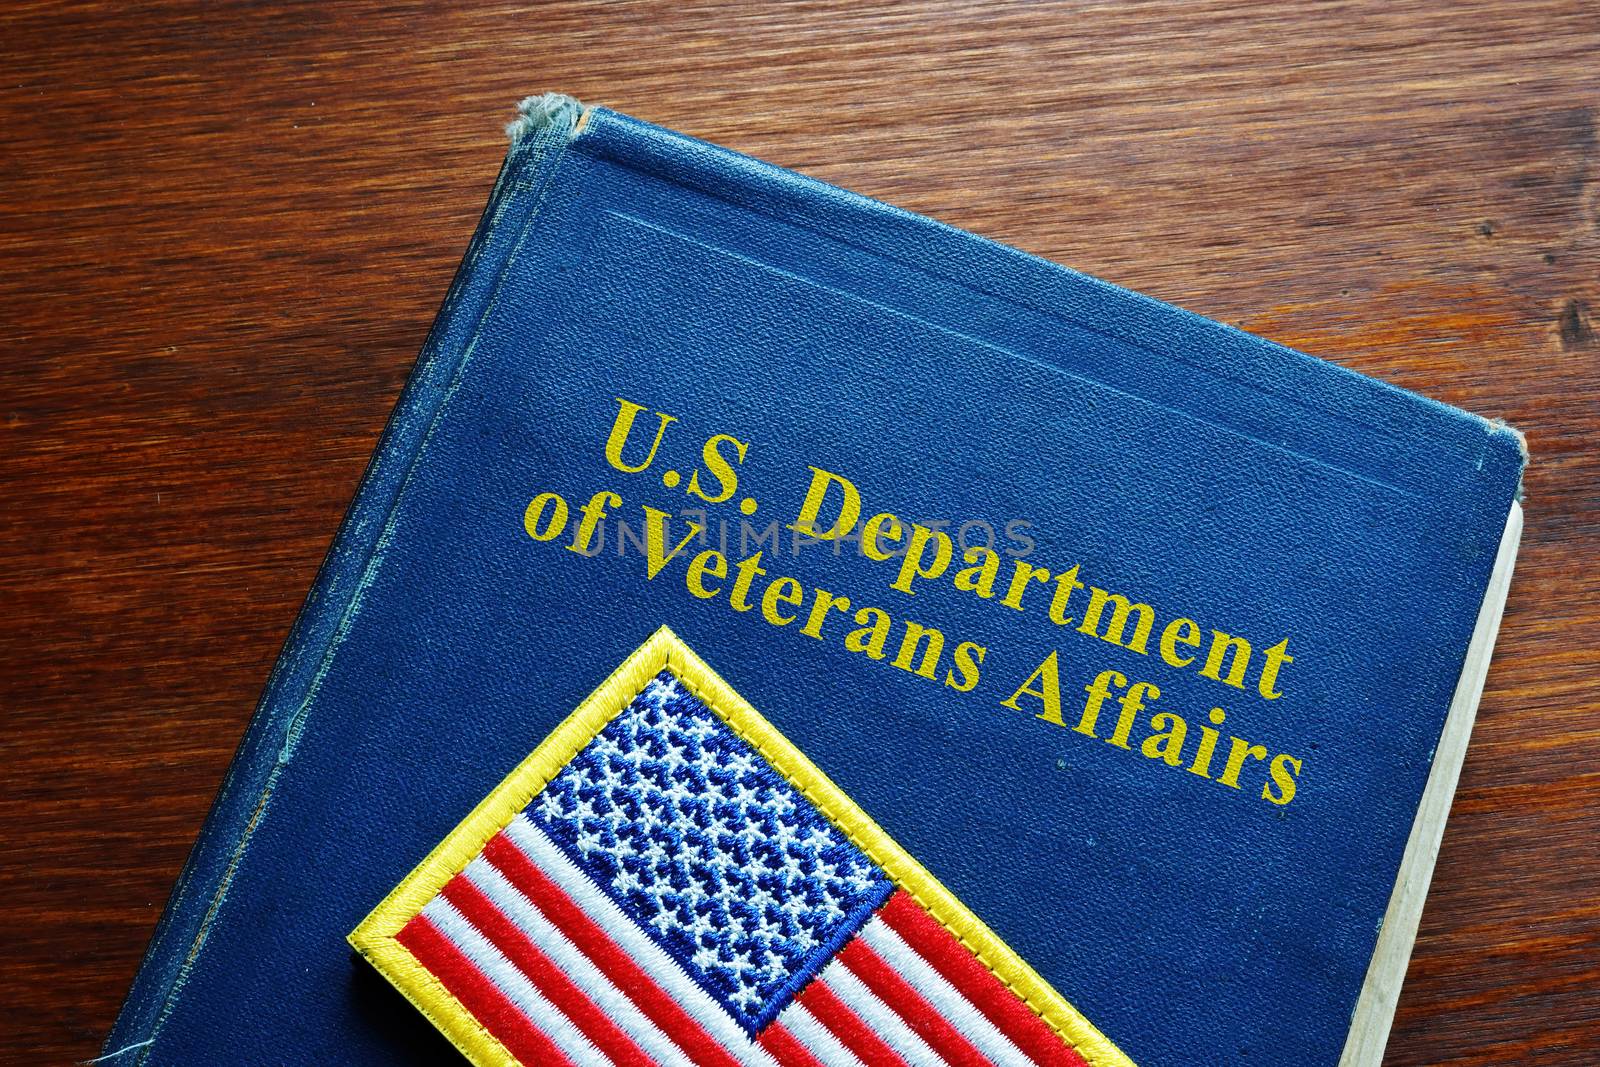 United States US Department of Veterans Affairs VA book and flag.